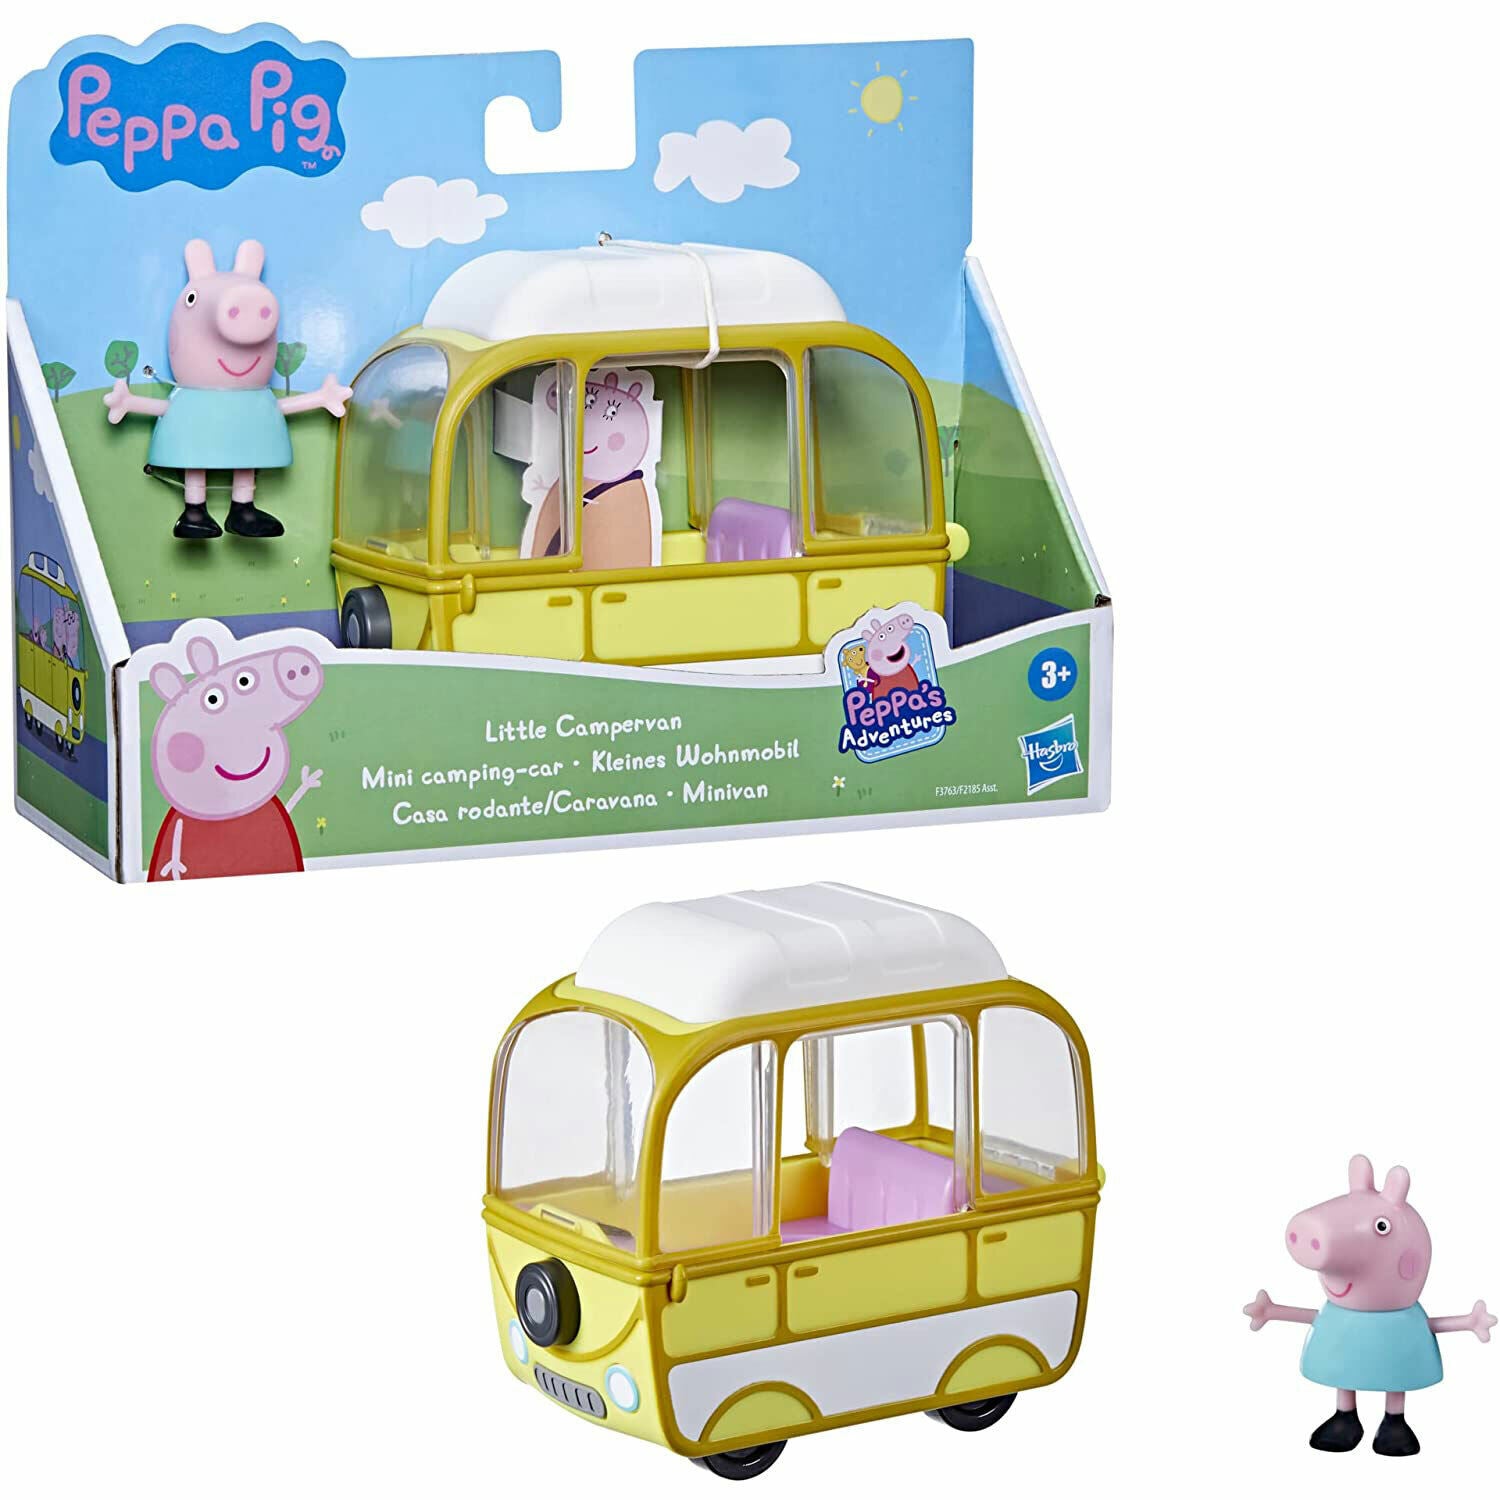 Peppa Pig Peppa's Adventures Little Campervan Vehicle - NEW!